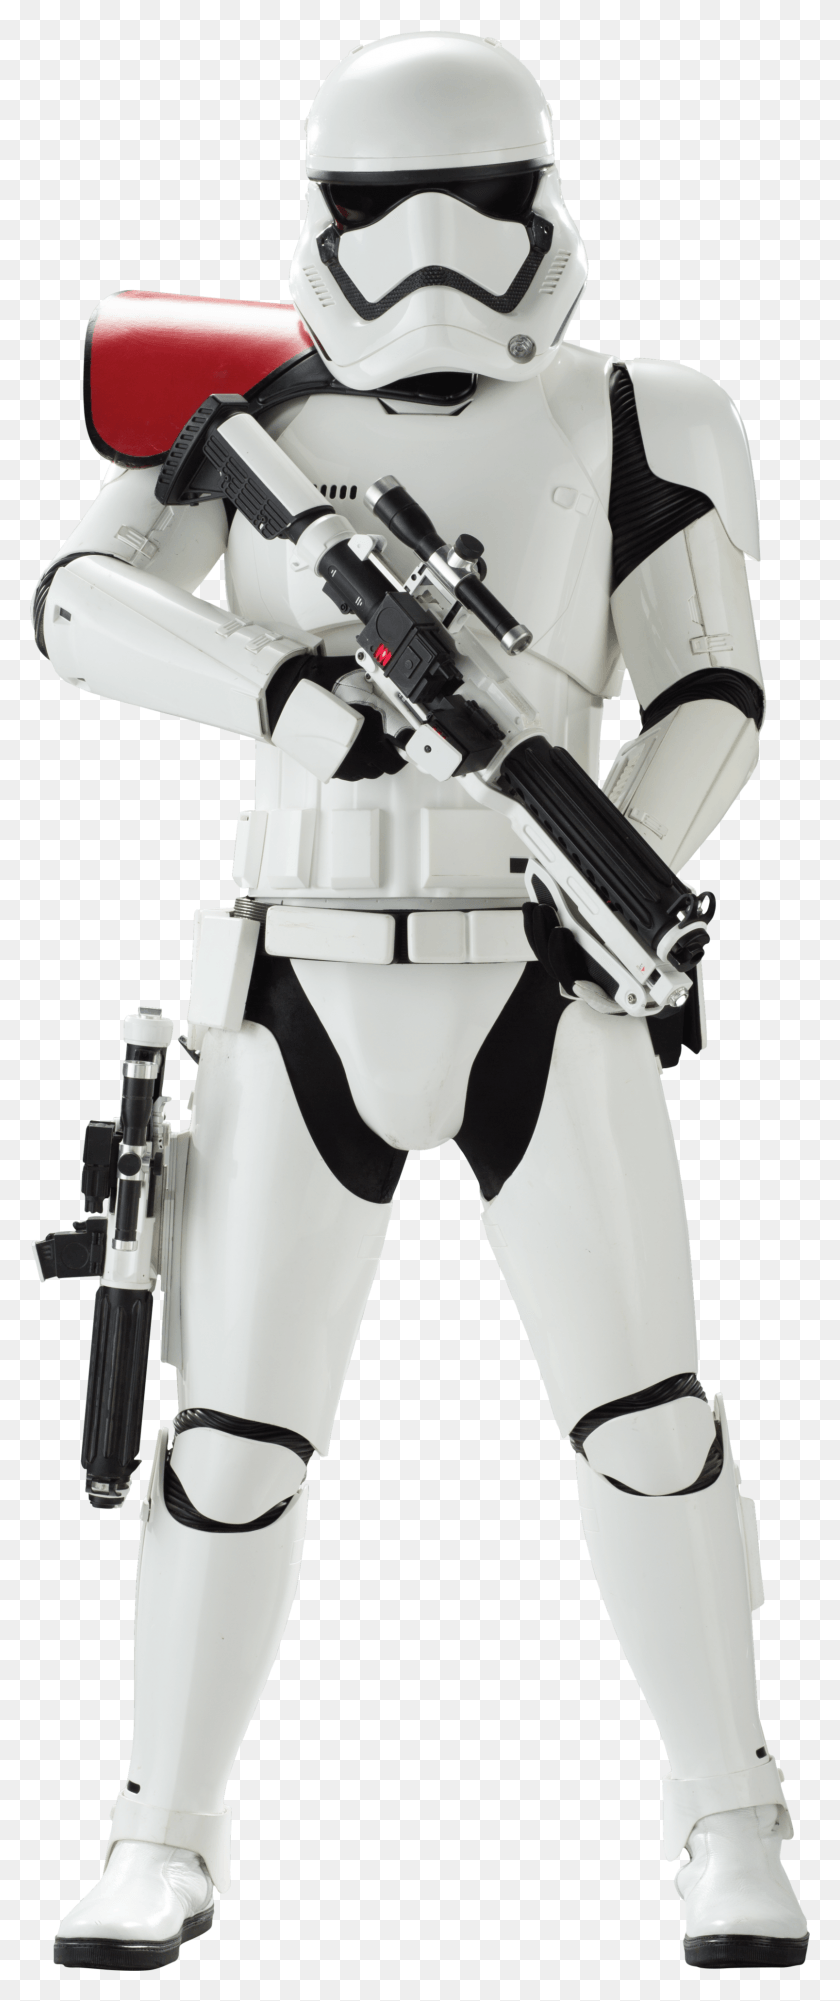 1607x4001 Descargar Png Stormtrooper, La Guerra De Las Galaxias, Stormtrooper Hd Png